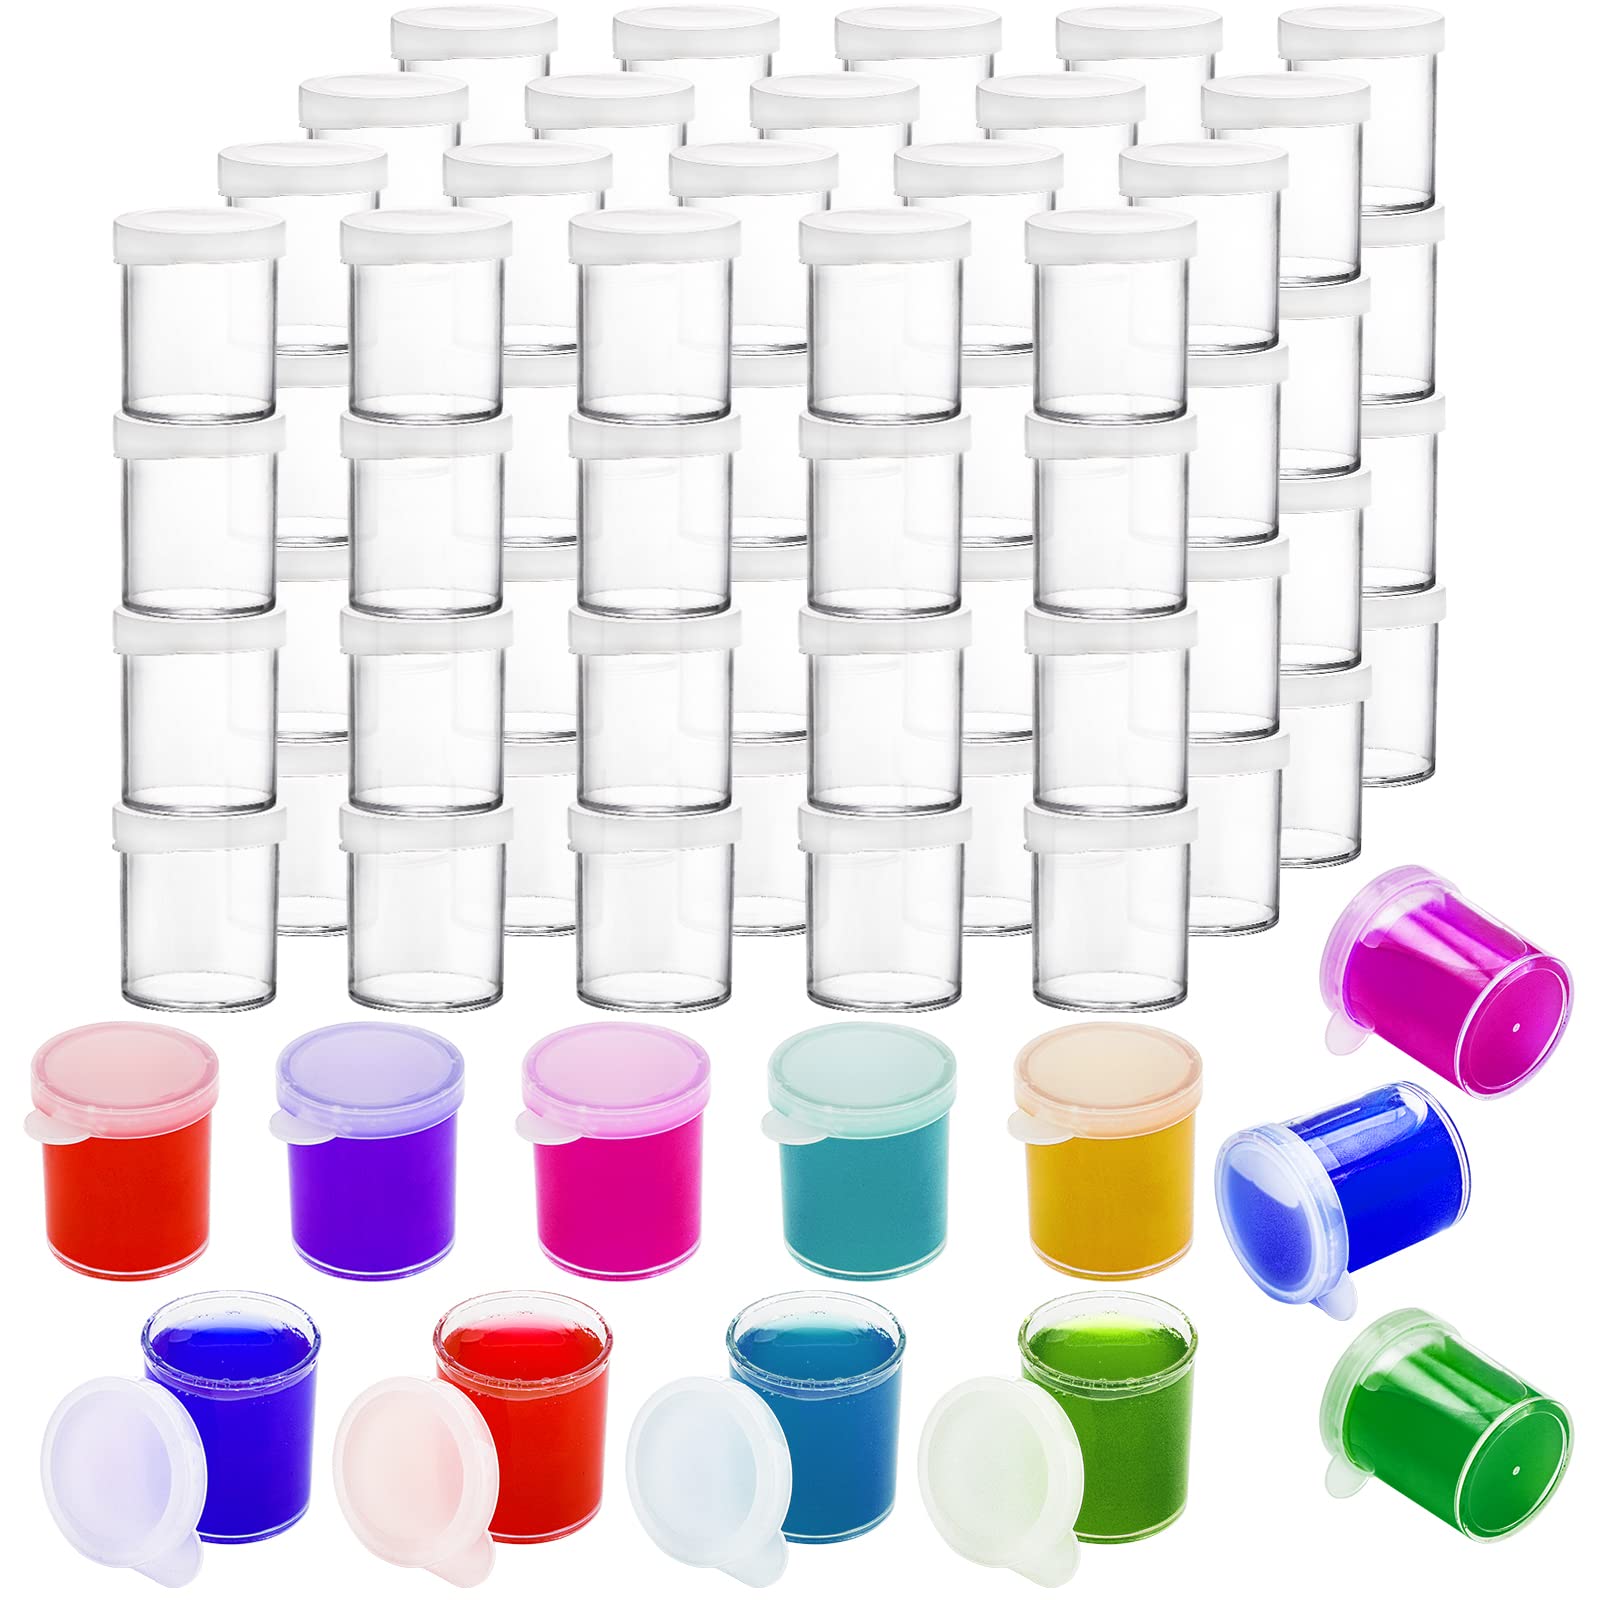 36 Empty Paint Pots with Lids, 5 ml/0.17 oz Clear Paint Cup Pot